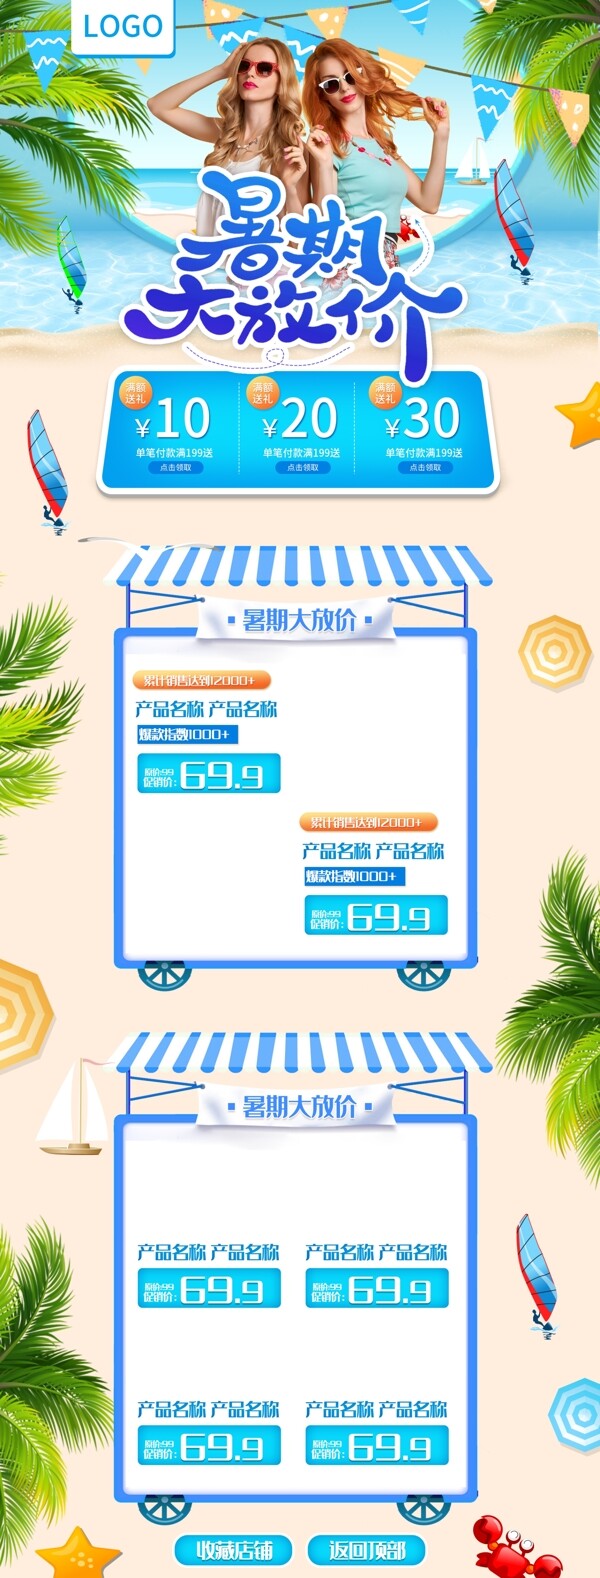 夏日海景促销购物节页面设计图片